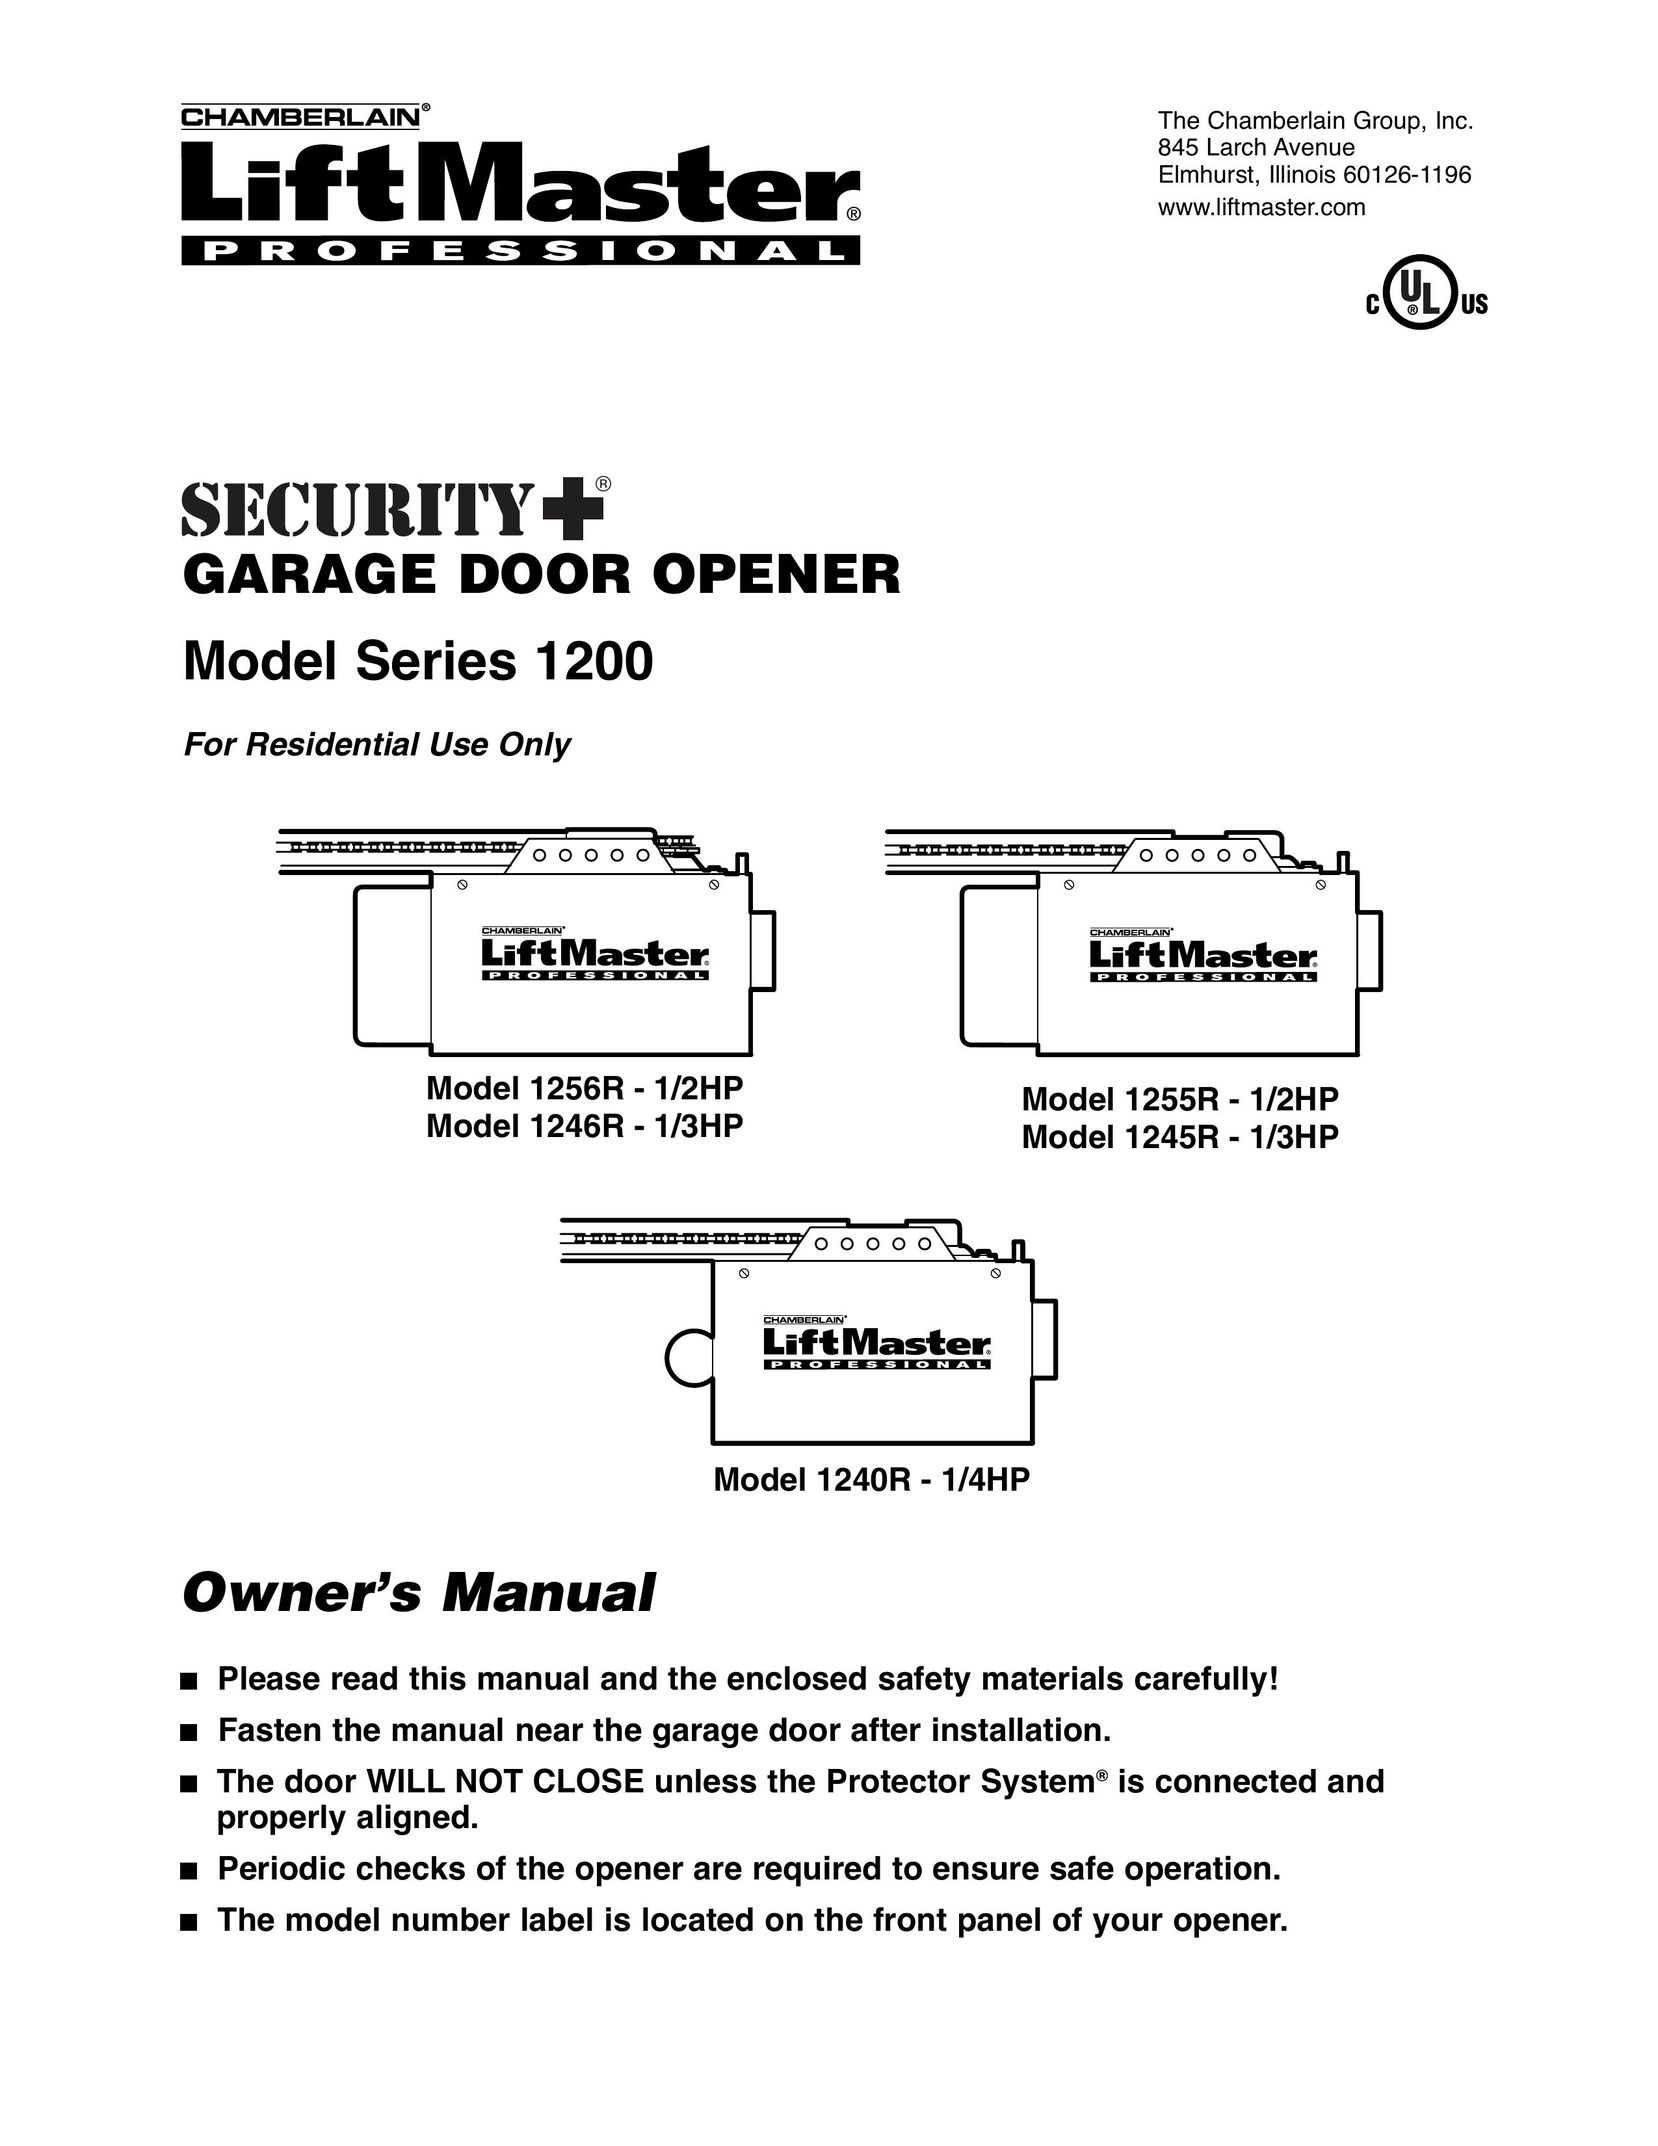 Chamberlain 1246R - 1/3HP Garage Door Opener User Manual